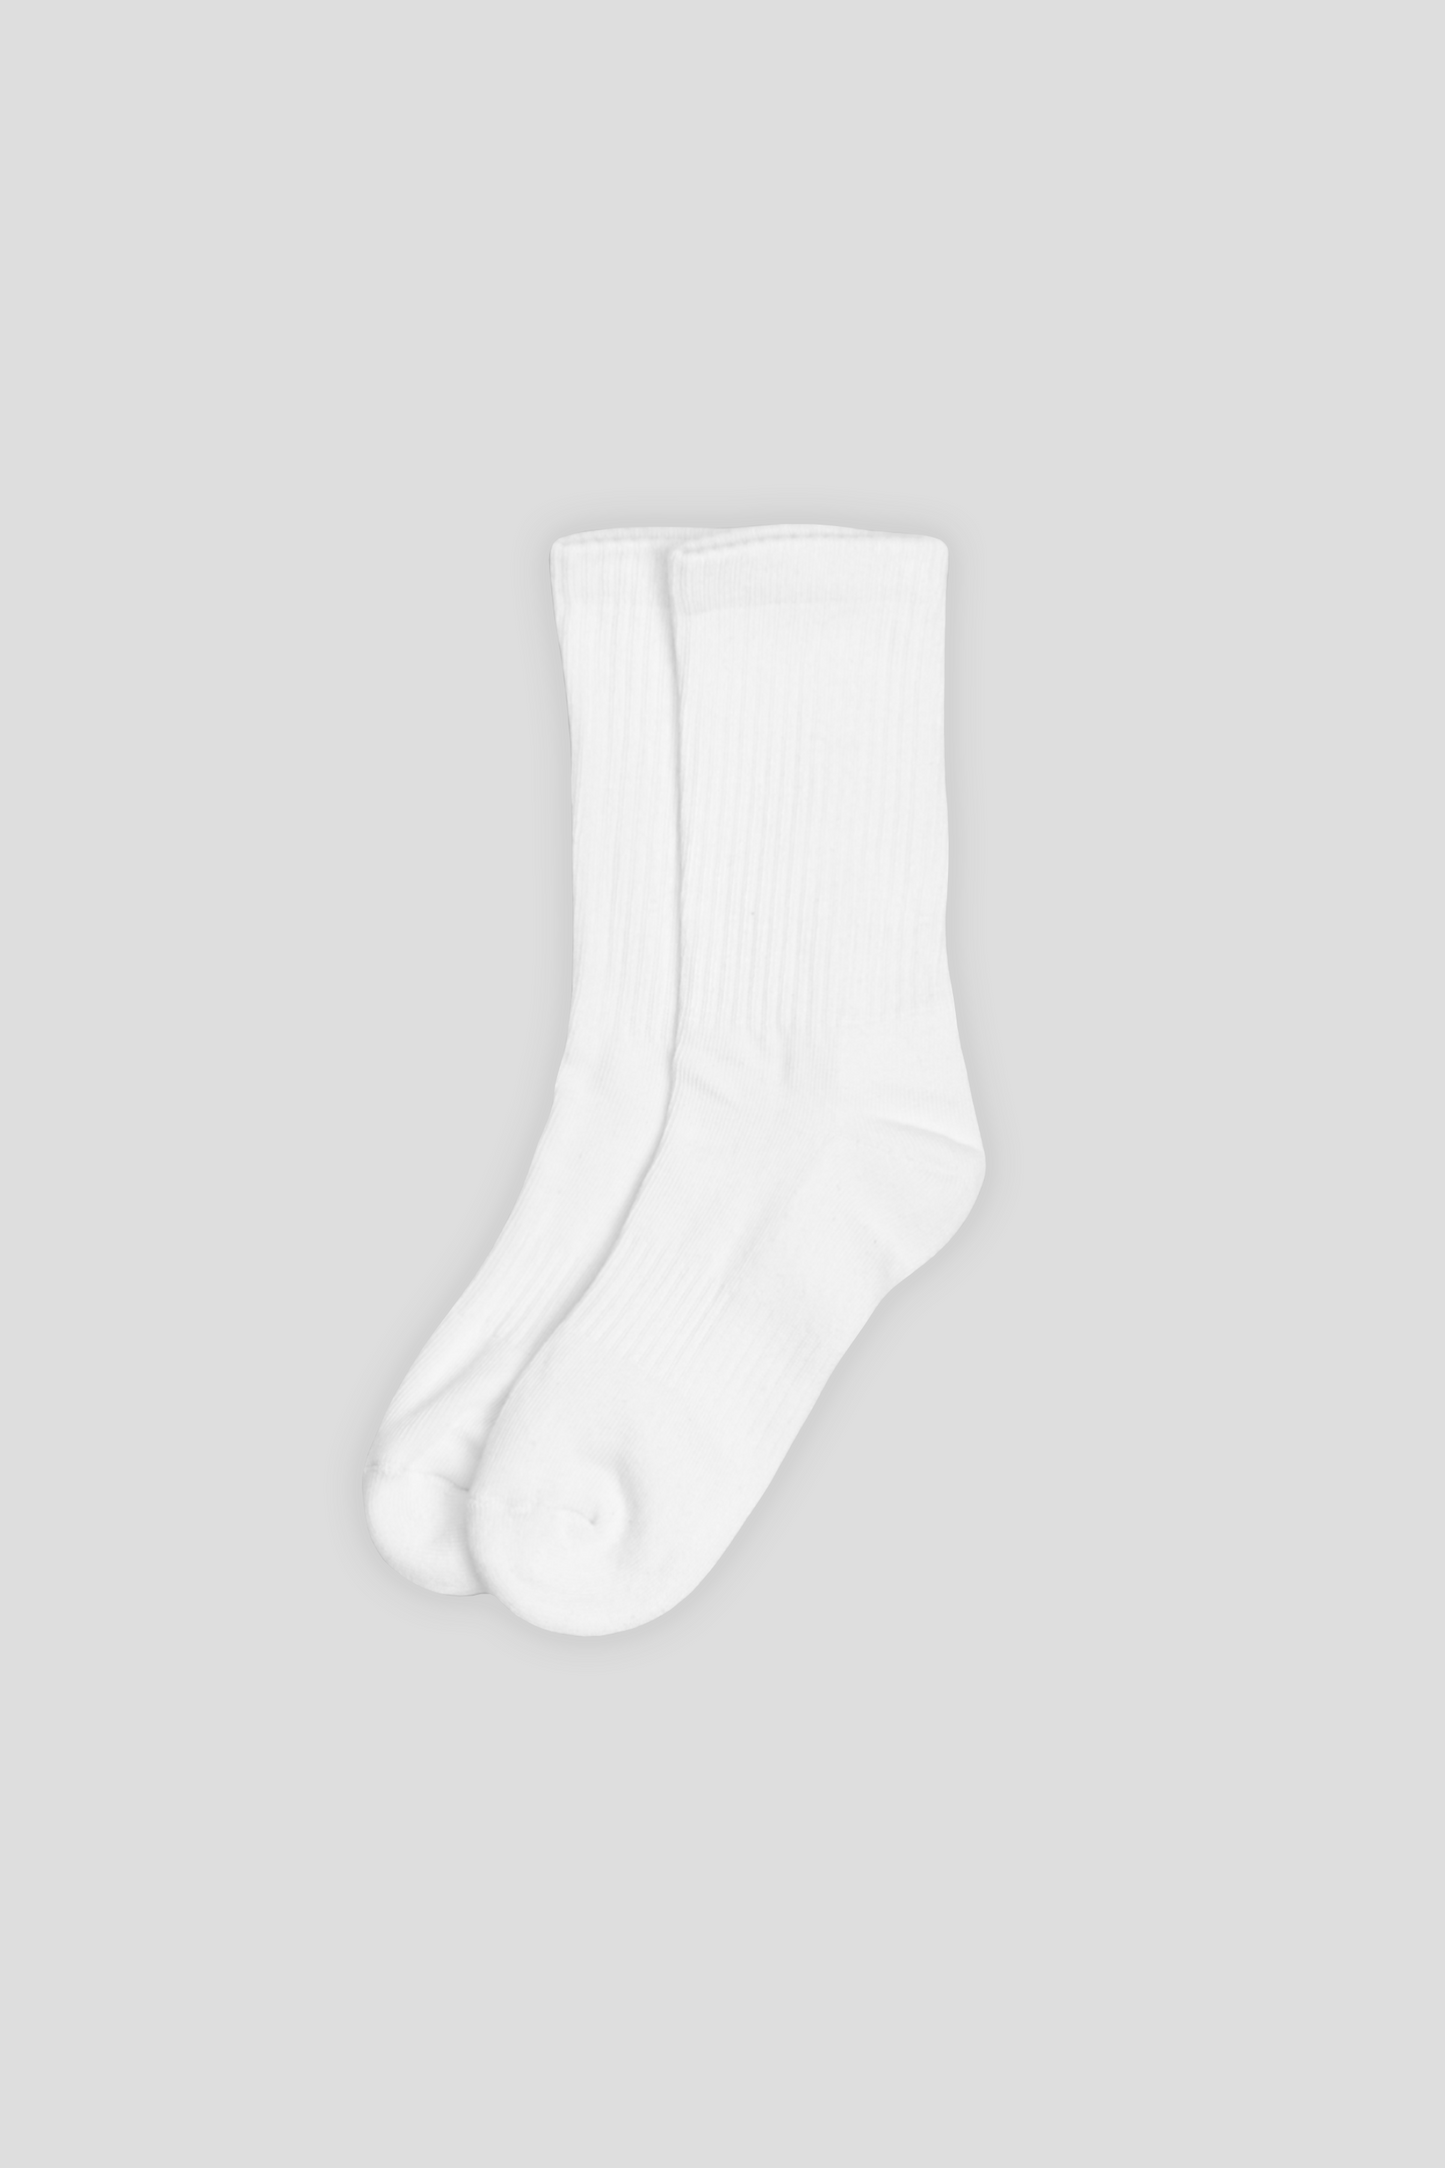 Crew Socks 3-Pack White